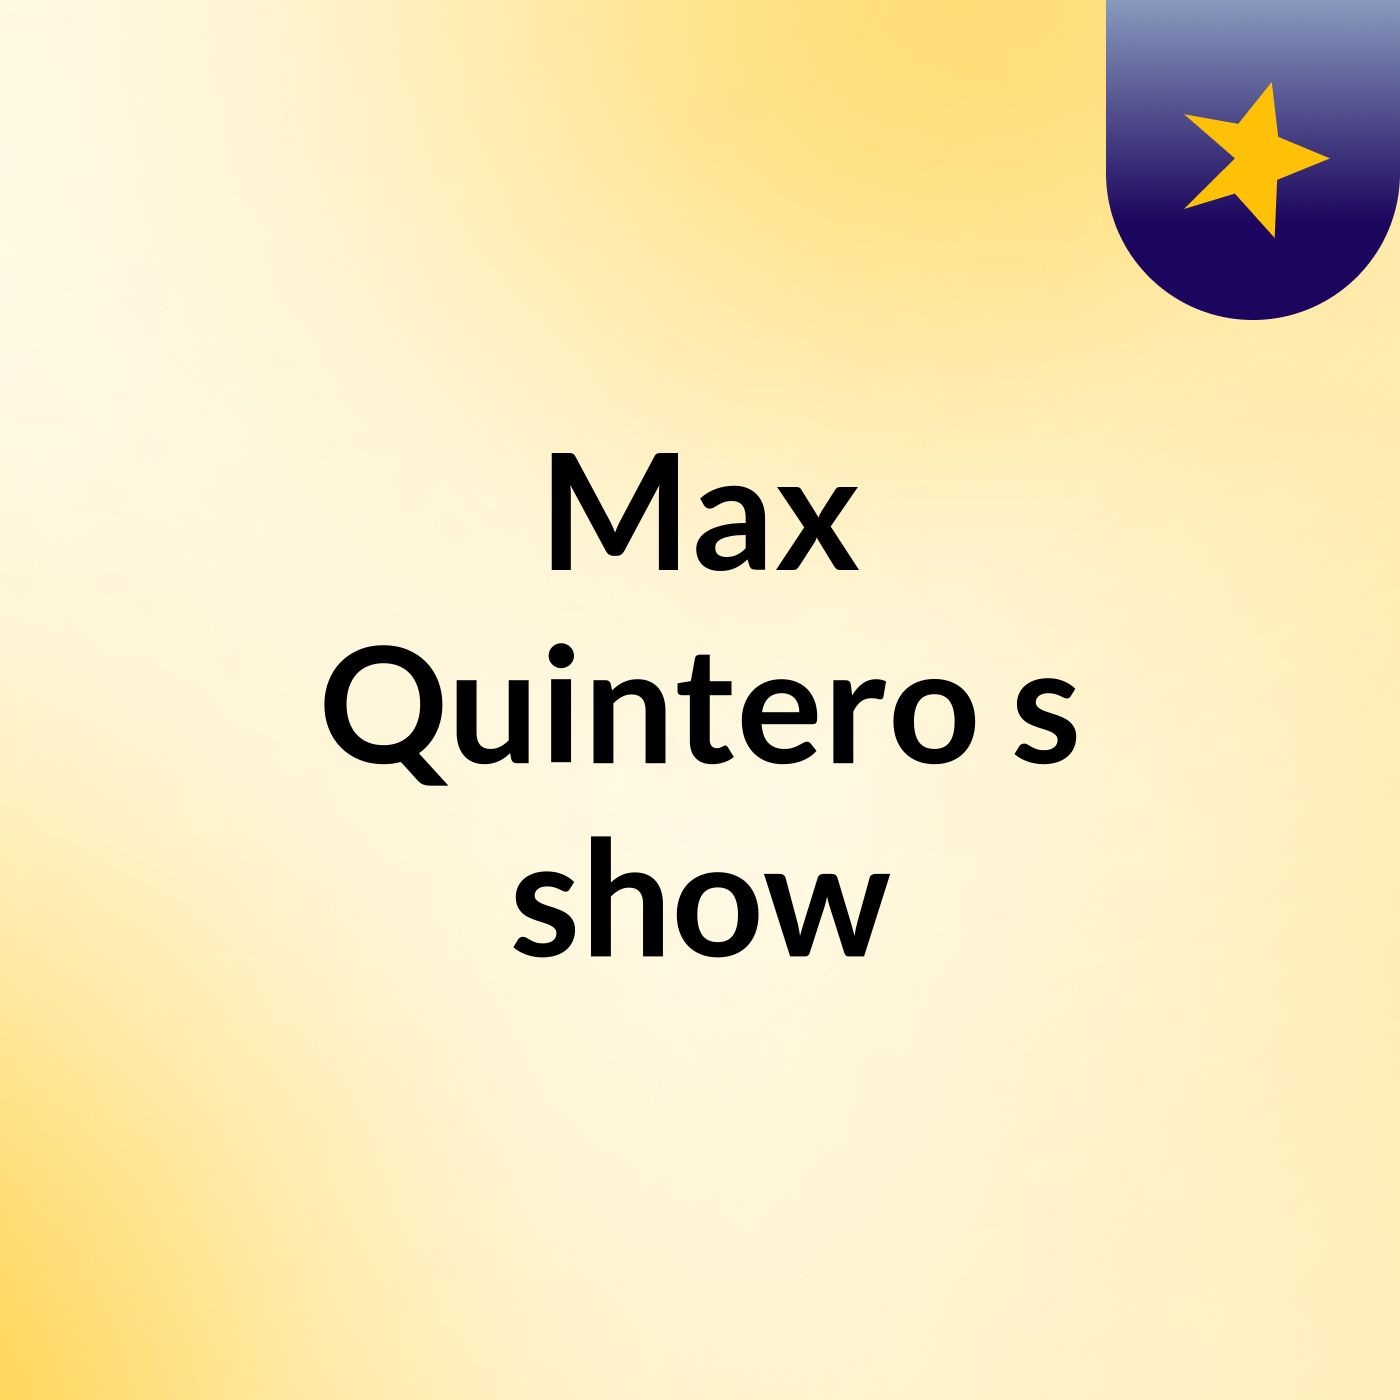 Max Quintero's show